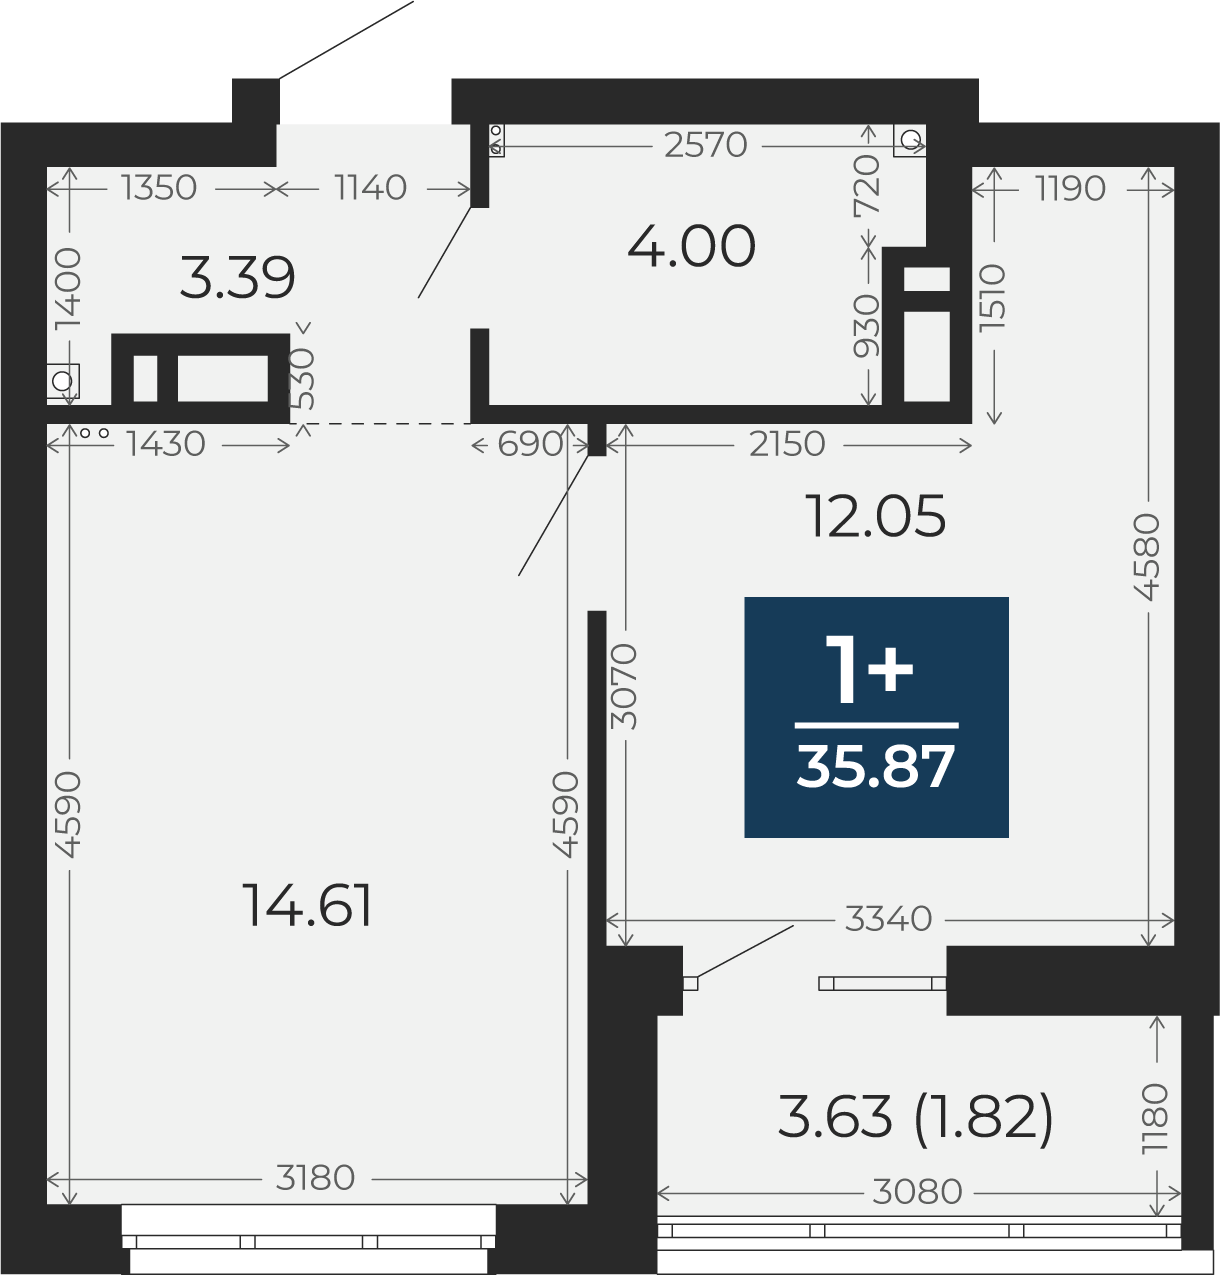 Квартира № 406, 1-комнатная, 35.87 кв. м, 11 этаж